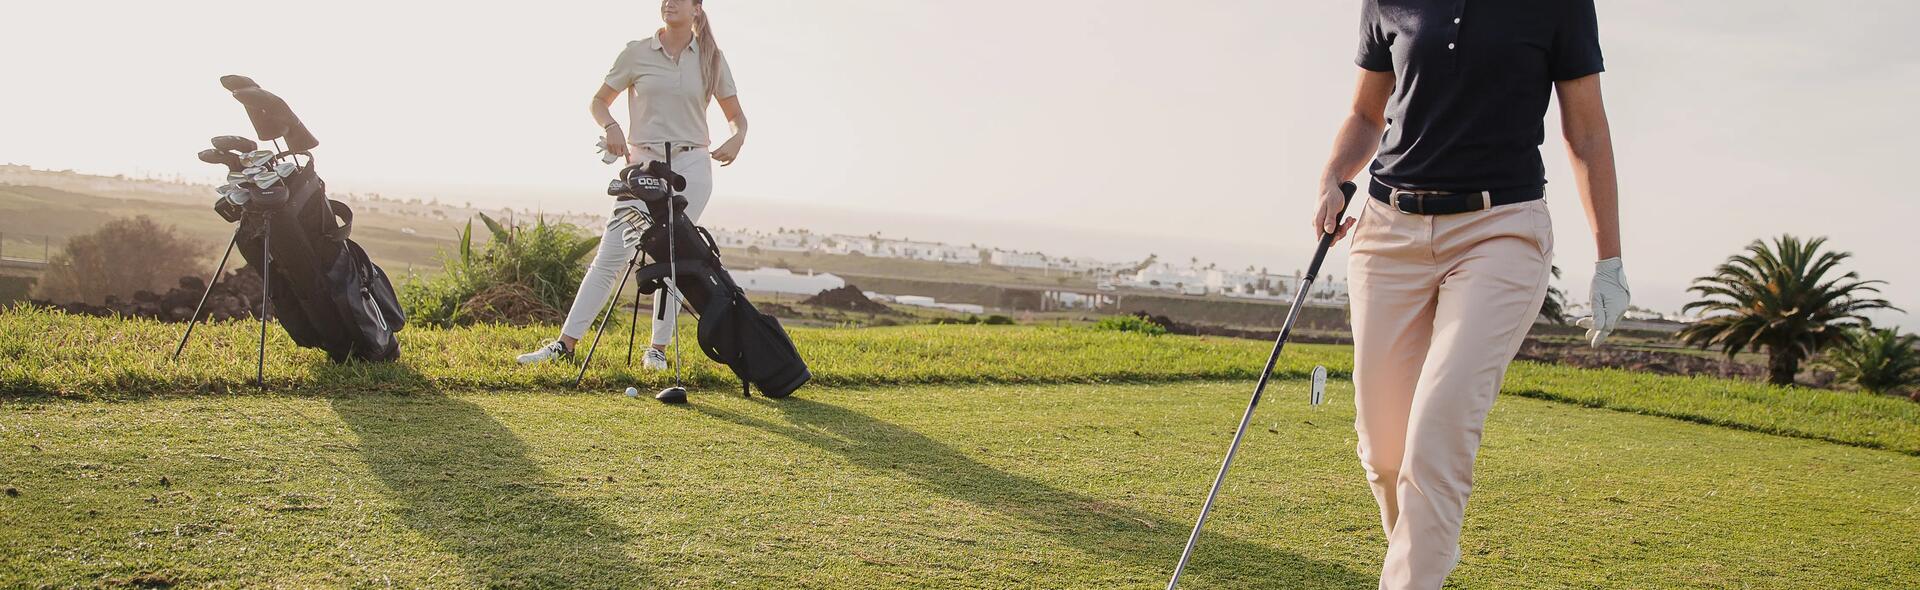 Kobieta ubrana w strój i buty do golfa trzymająca kij golfowy